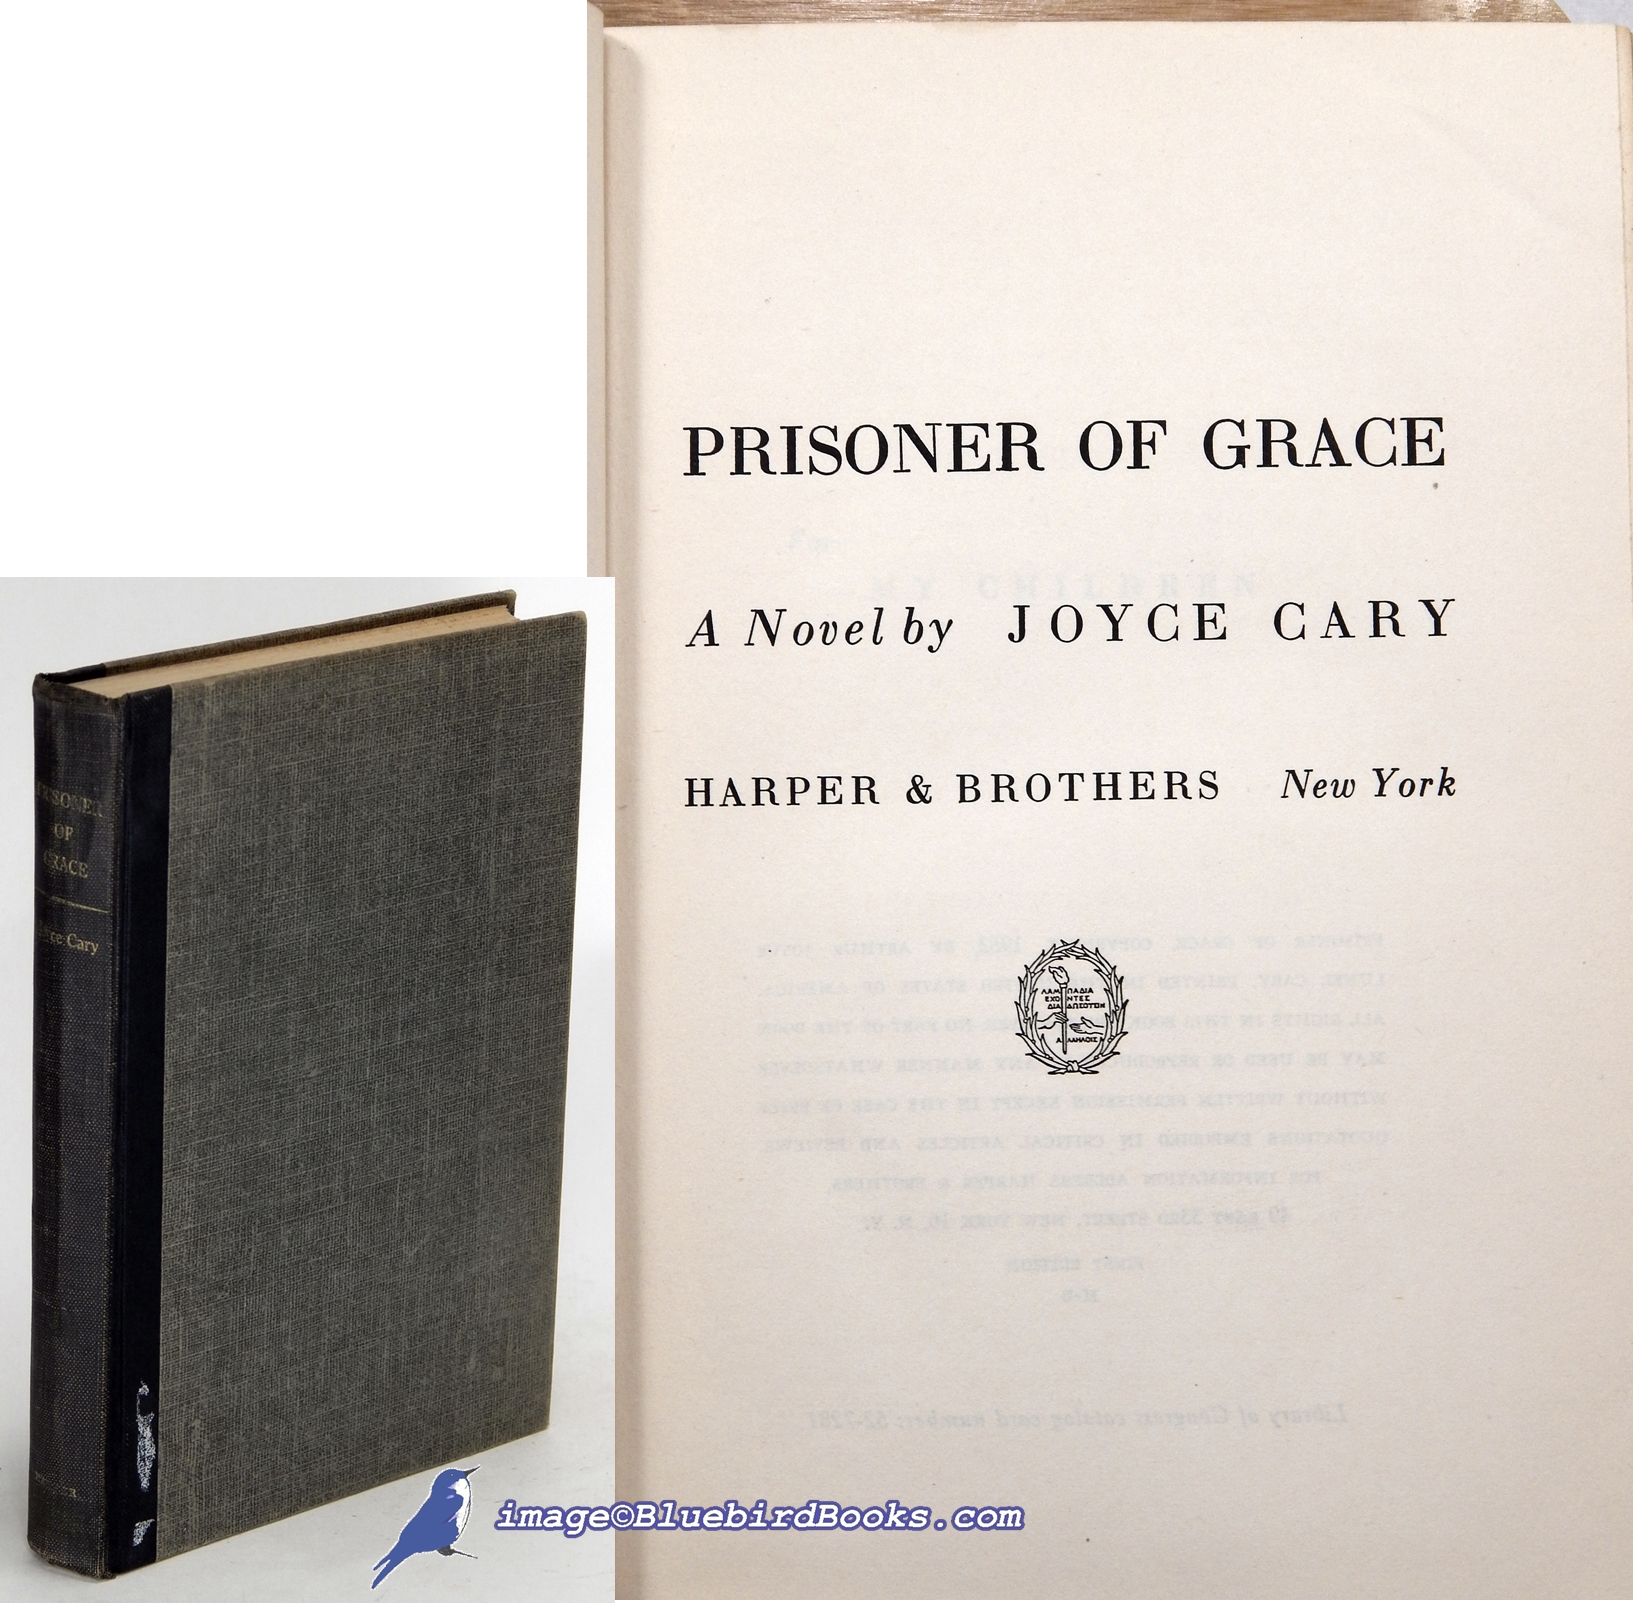 CARY, JOYCE - Prisoner of Grace